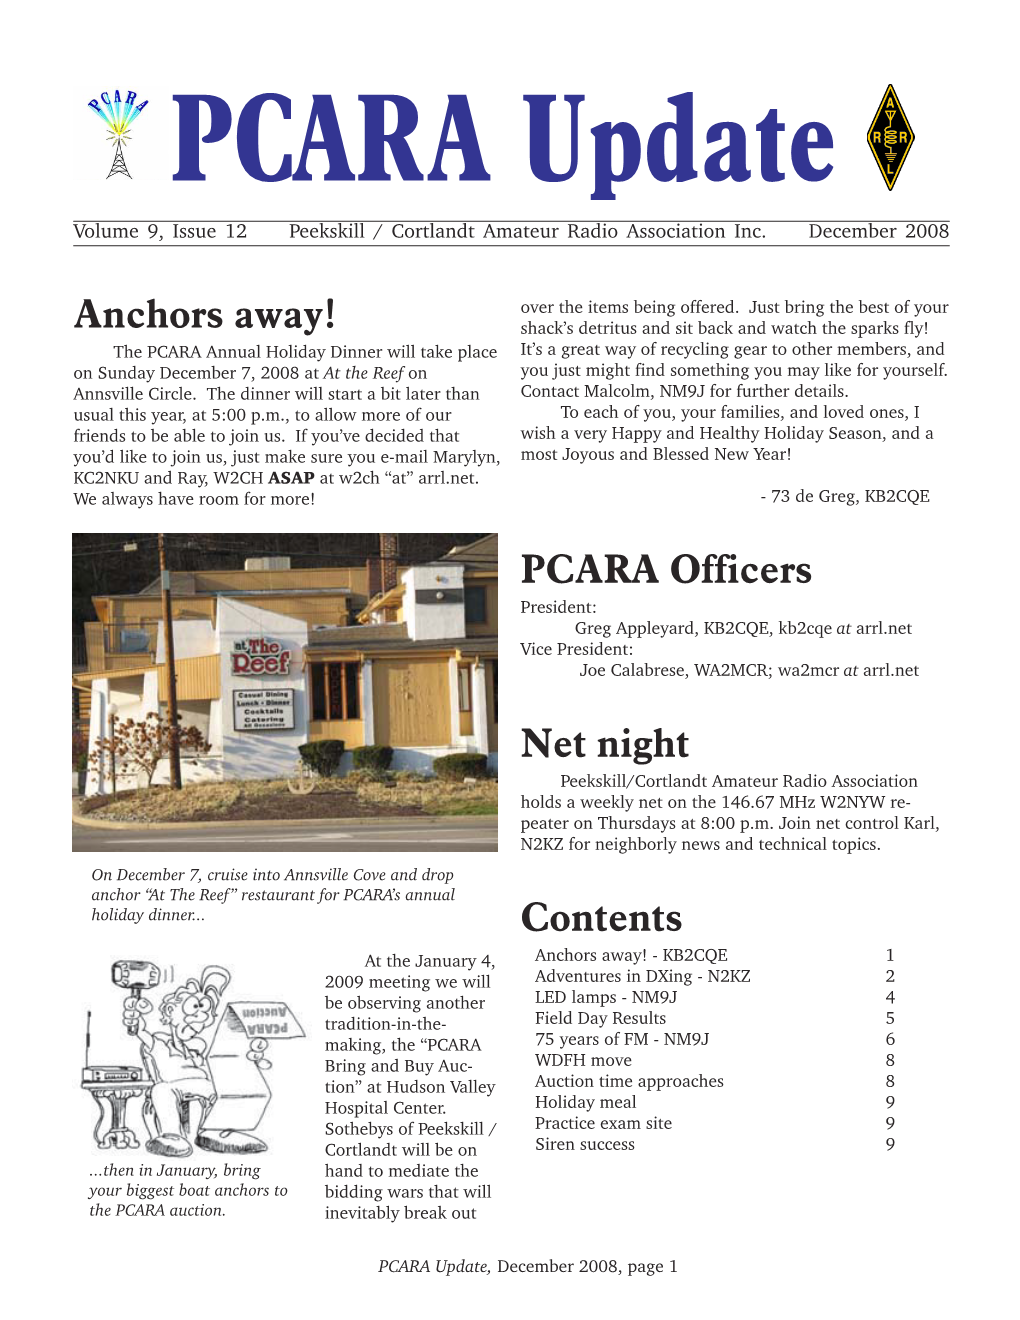 PCARA Update December 2008